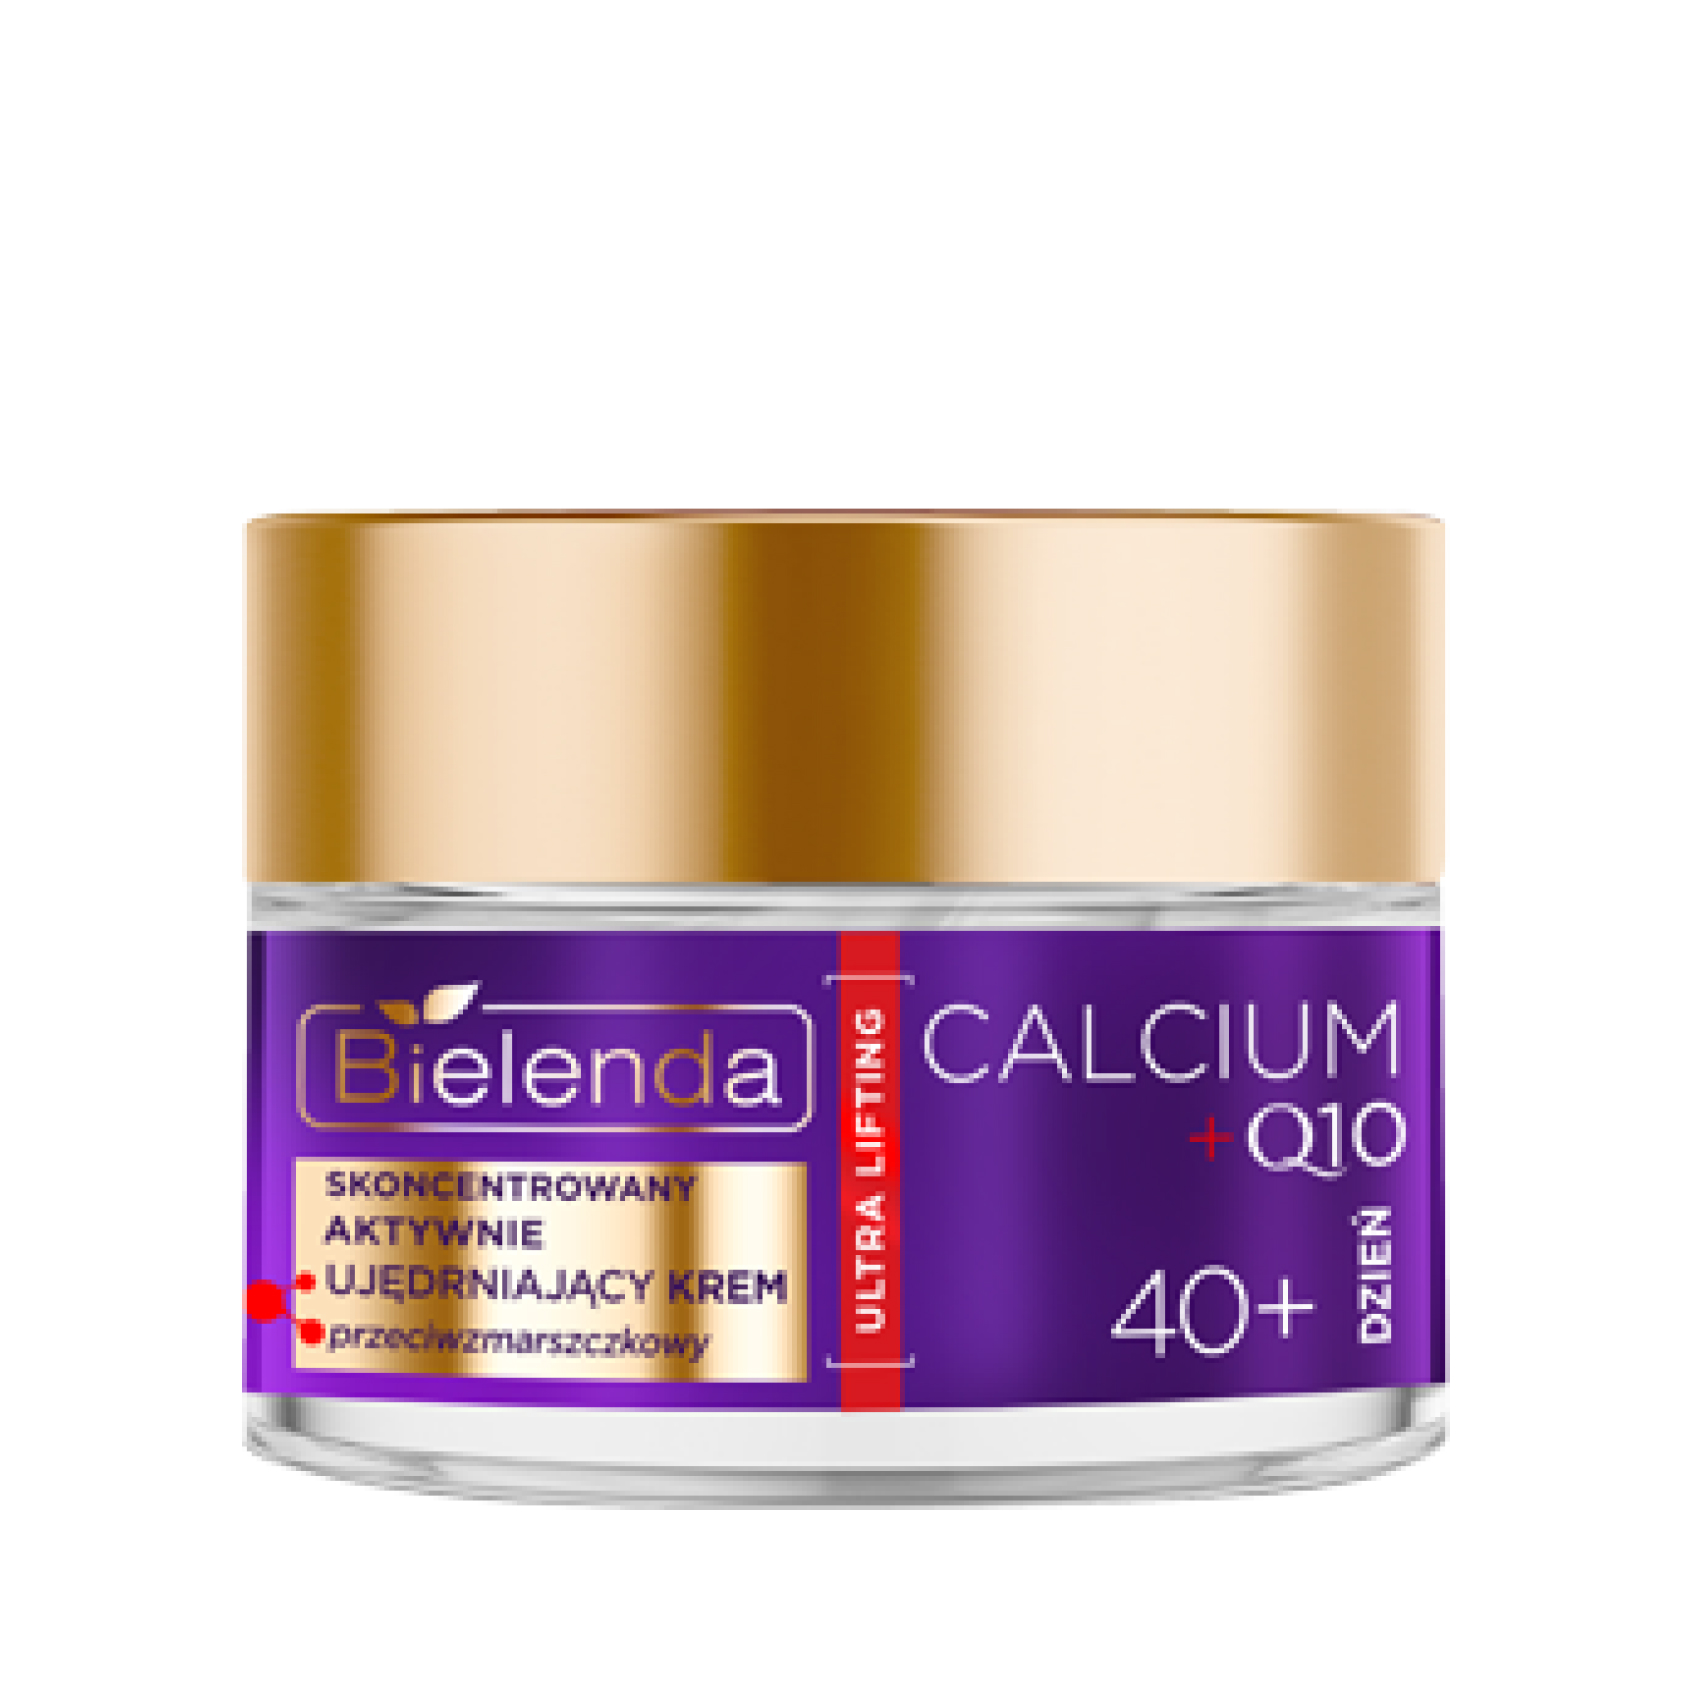 Крем Для Лица Bielenda Calcium Q10 Активно Укрепляющий 40+ Дневной